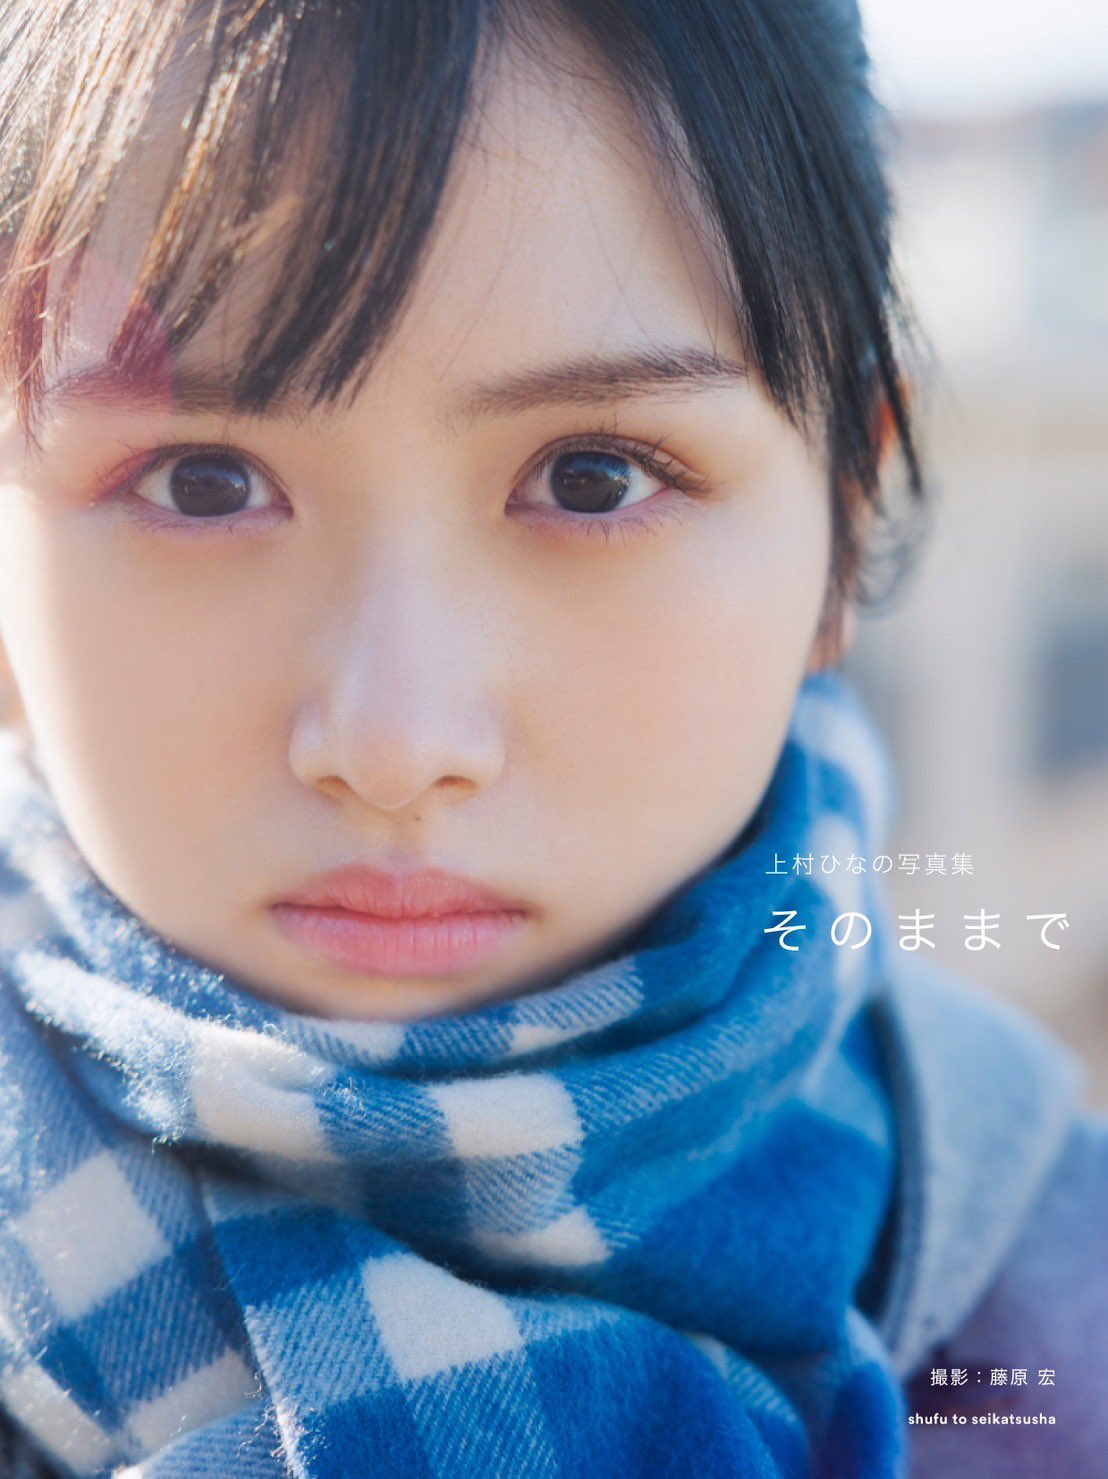 日向坂46上村ひなの寫真集「そのままで」將於 9/12 日發售